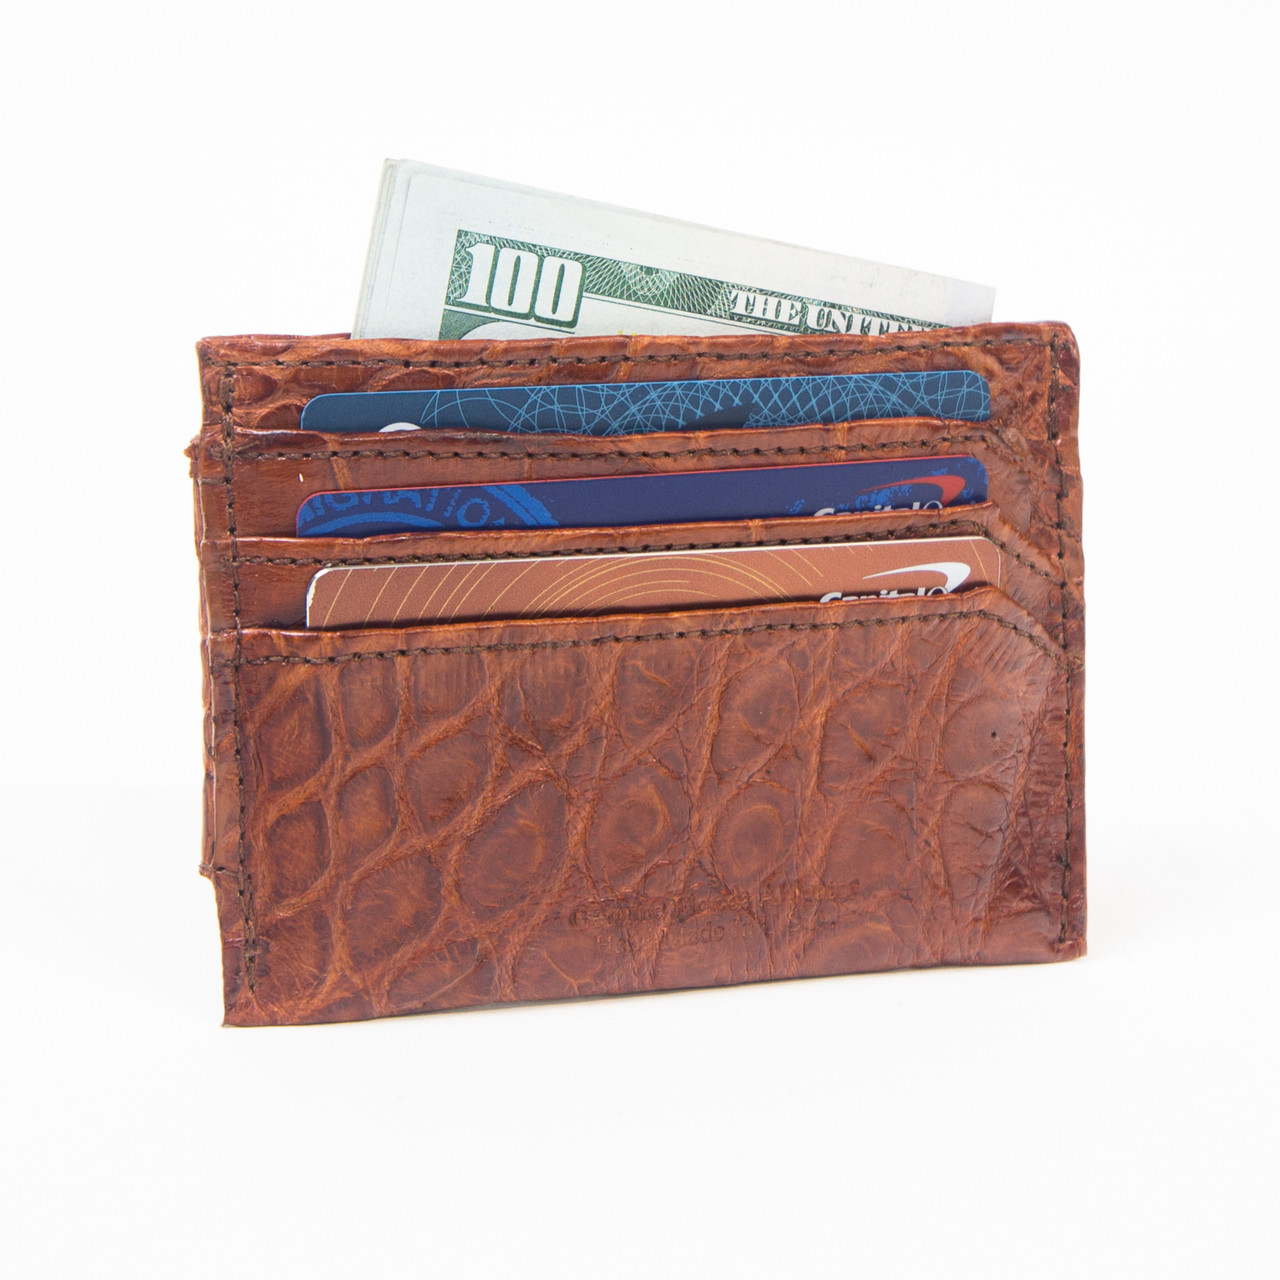 Alligator Card Holder Wallet Exotic Leather Wallet 